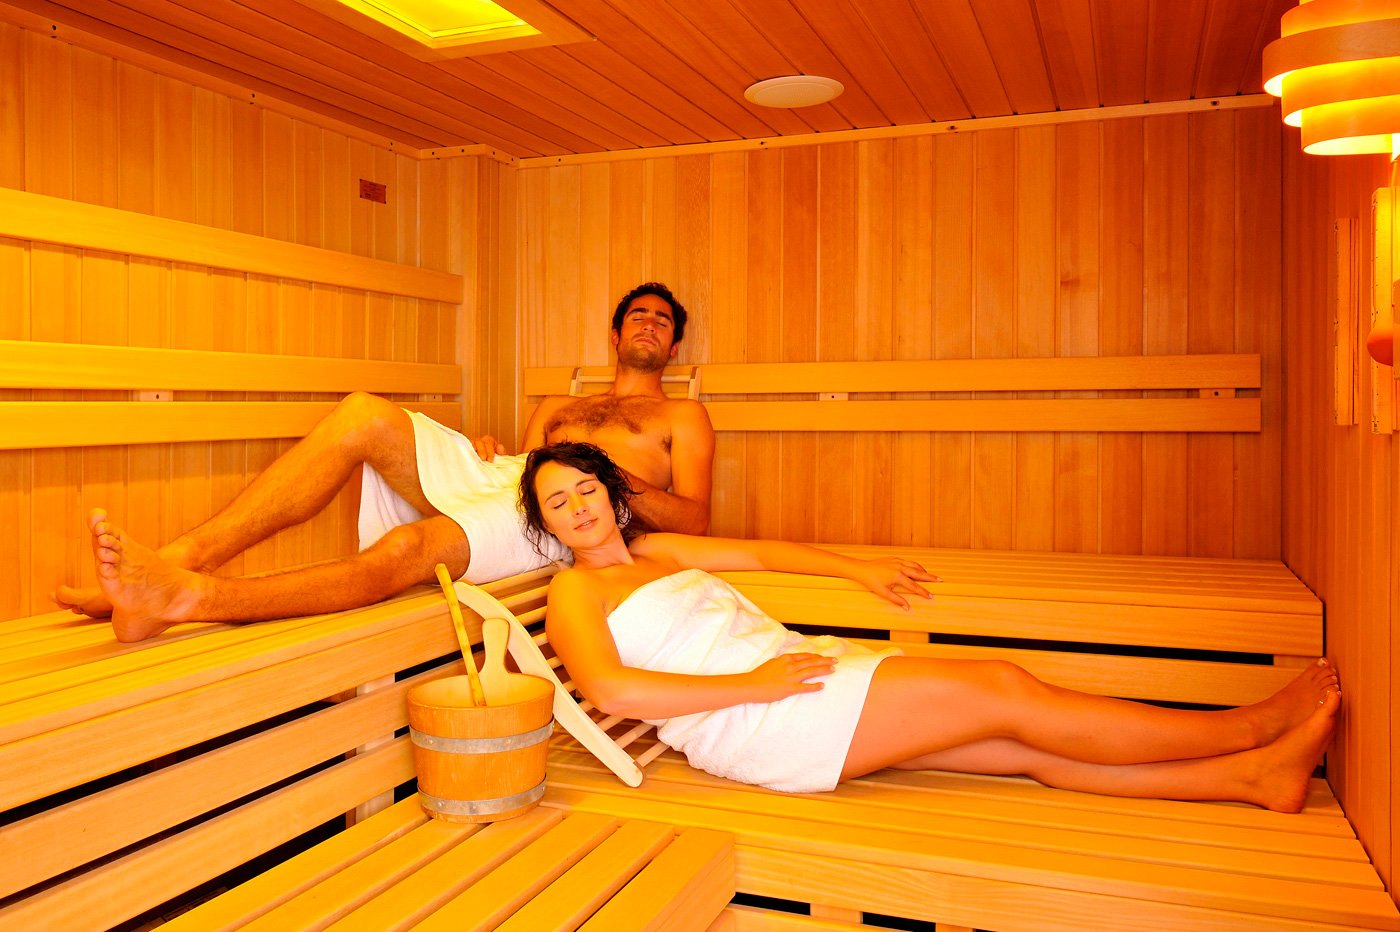 Бани моются мужчины и женщины. В сауне. Для сауны. Правильная баня. Отдых в бане.